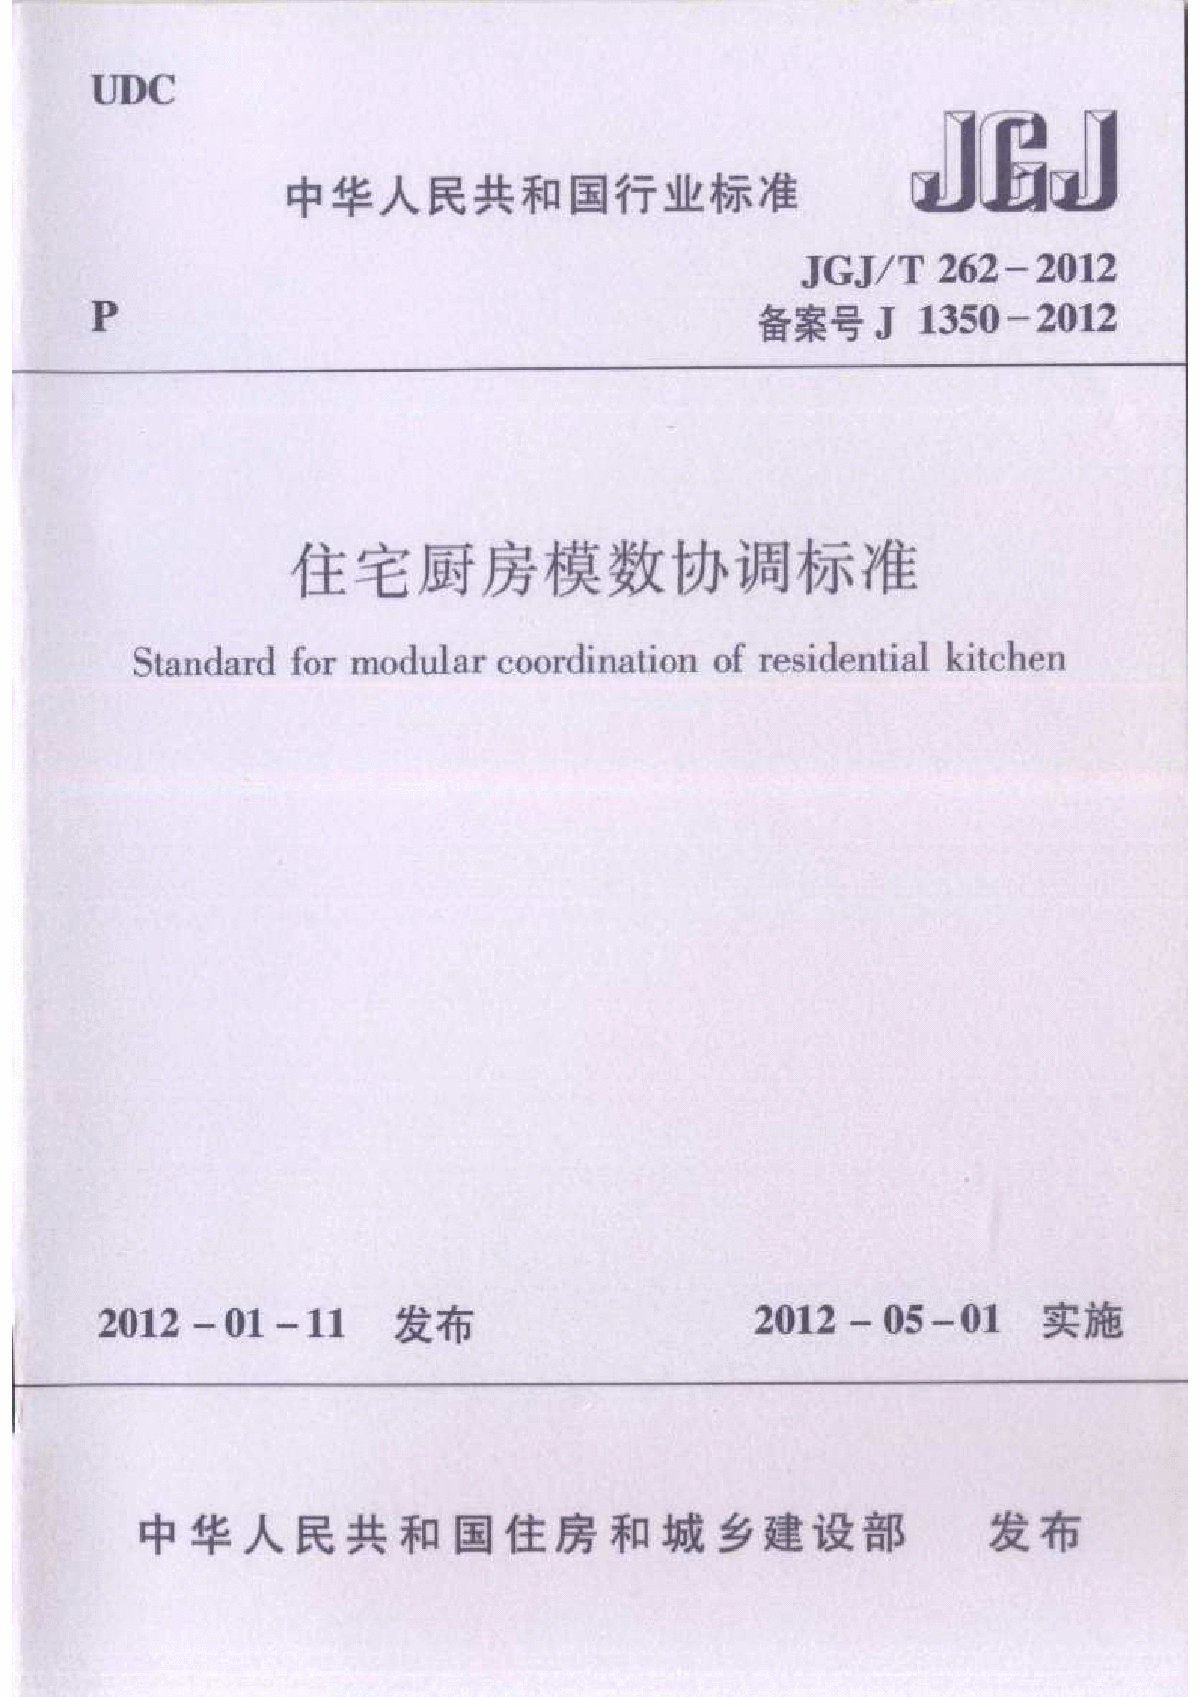 JGJT 262-2012 住宅厨房模数协调标准-图一